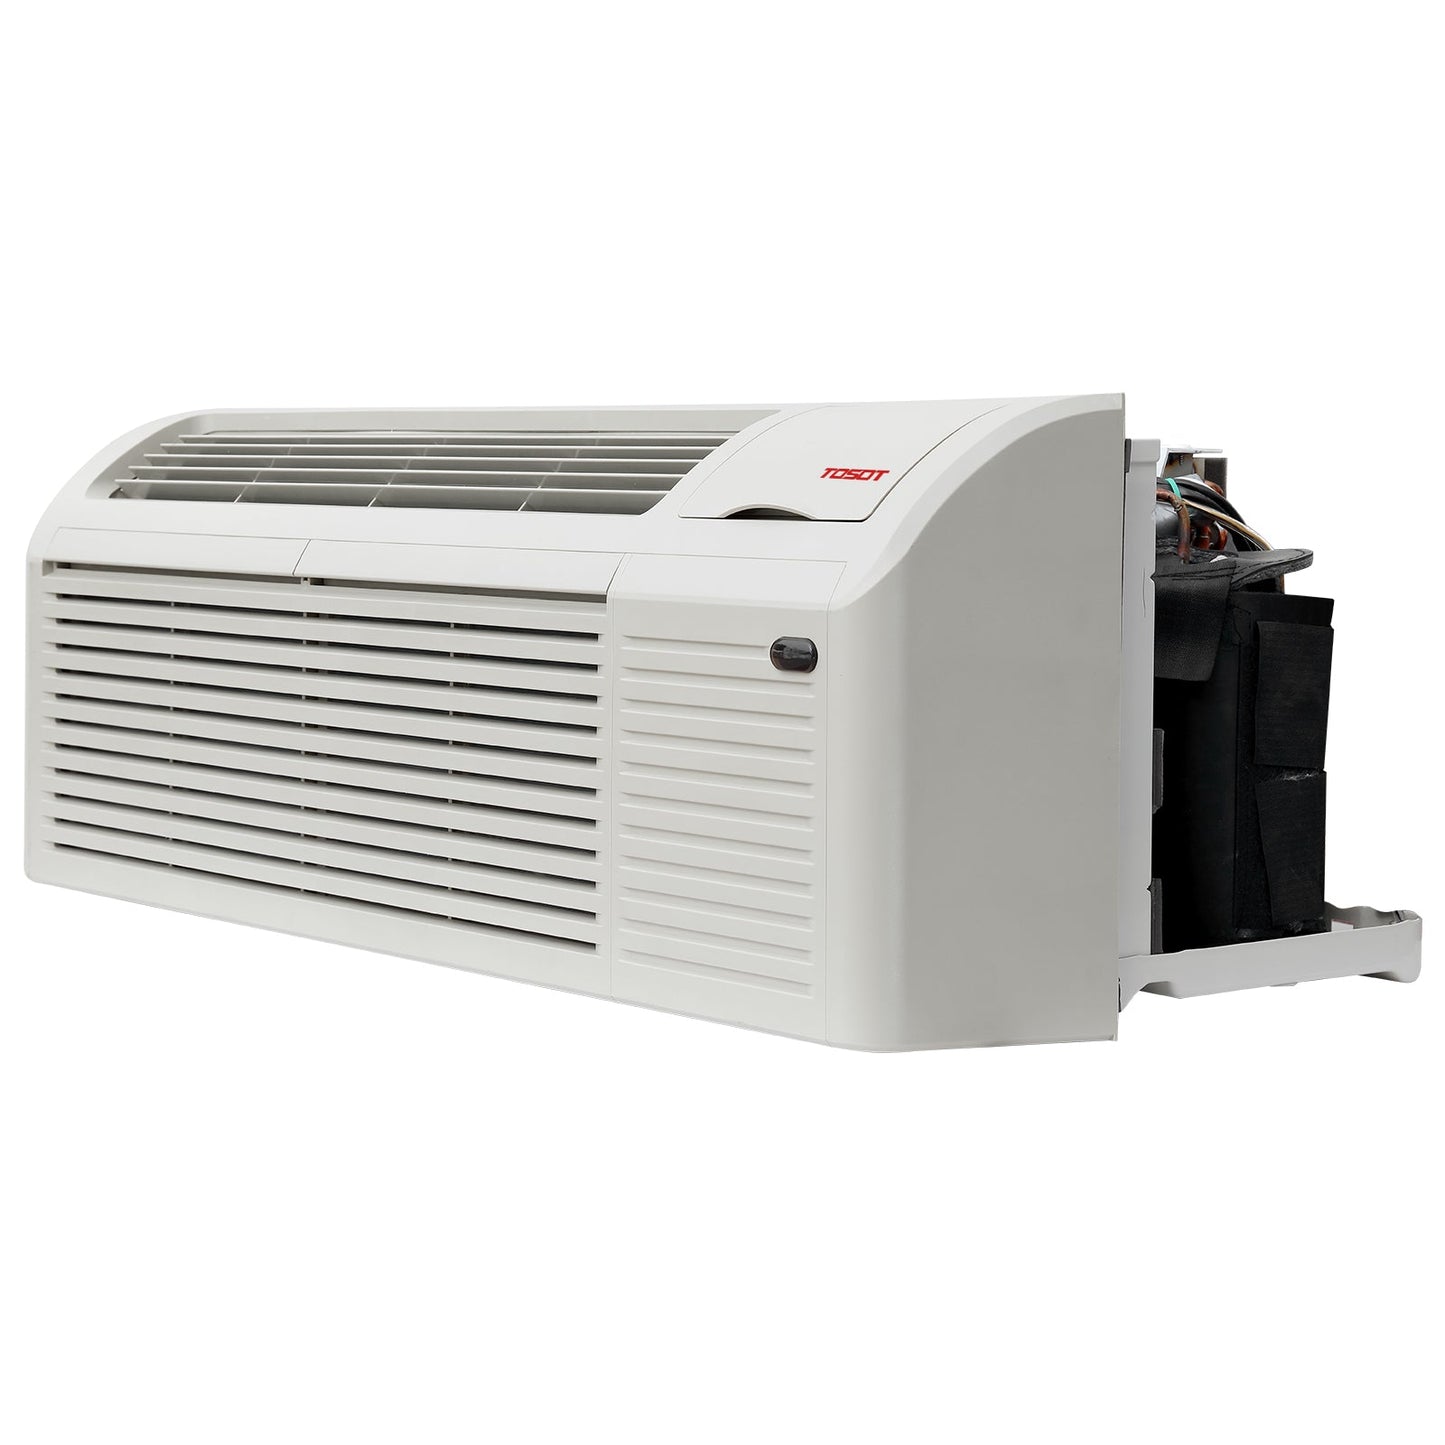 15,000 BTU PTAC Air Conditioner